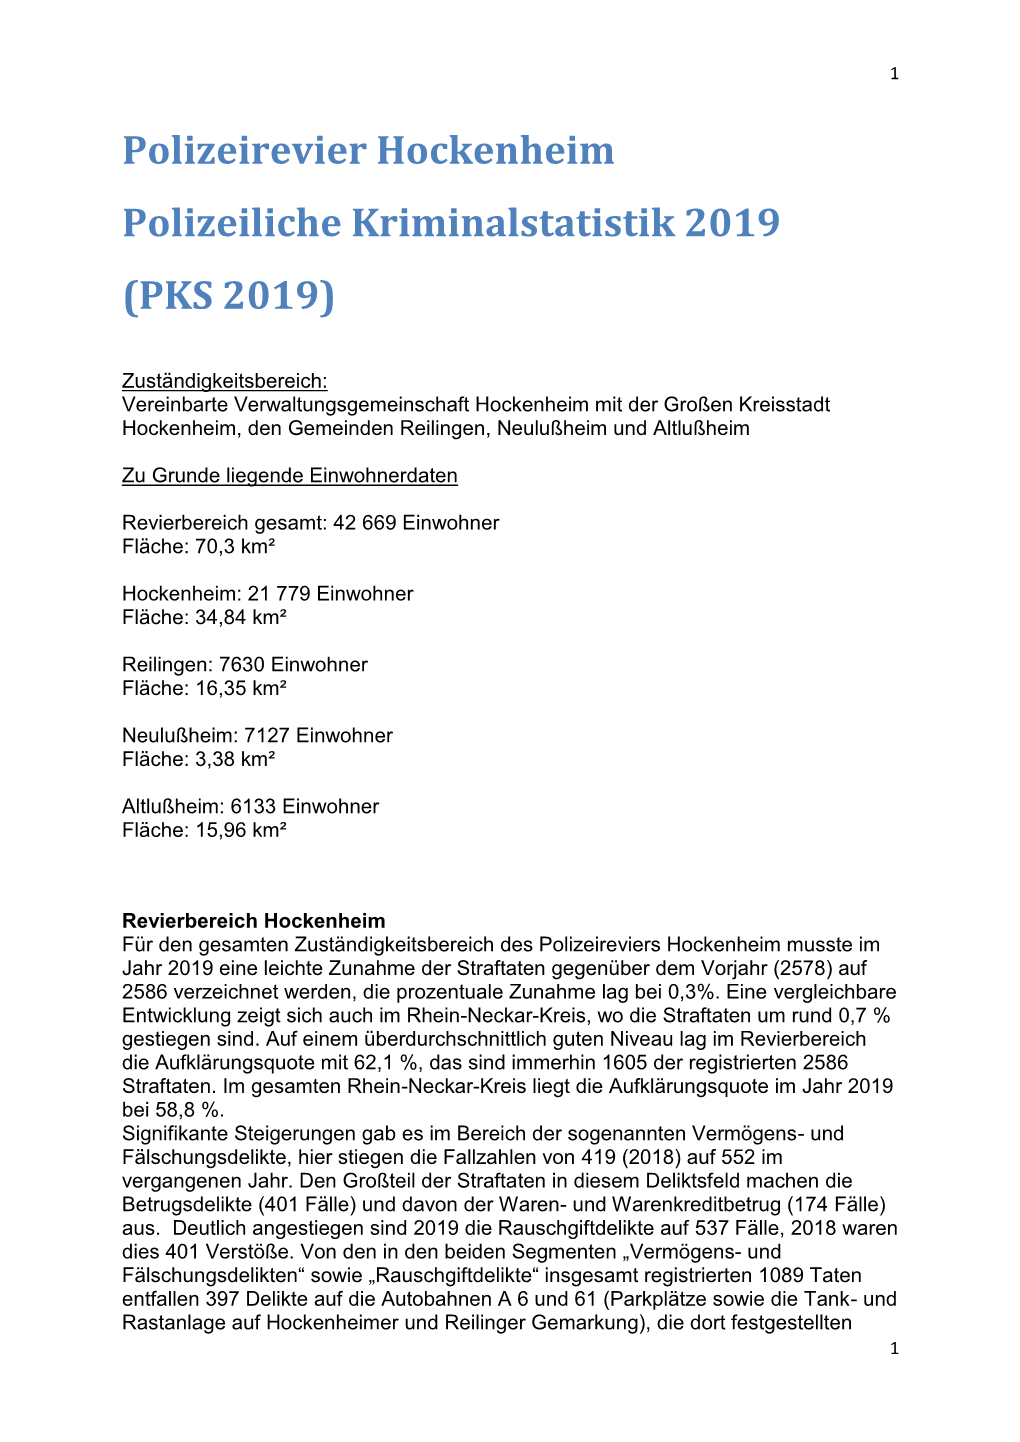 Polizeirevier Hockenheim Polizeiliche Kriminalstatistik 2019 (PKS 2019)